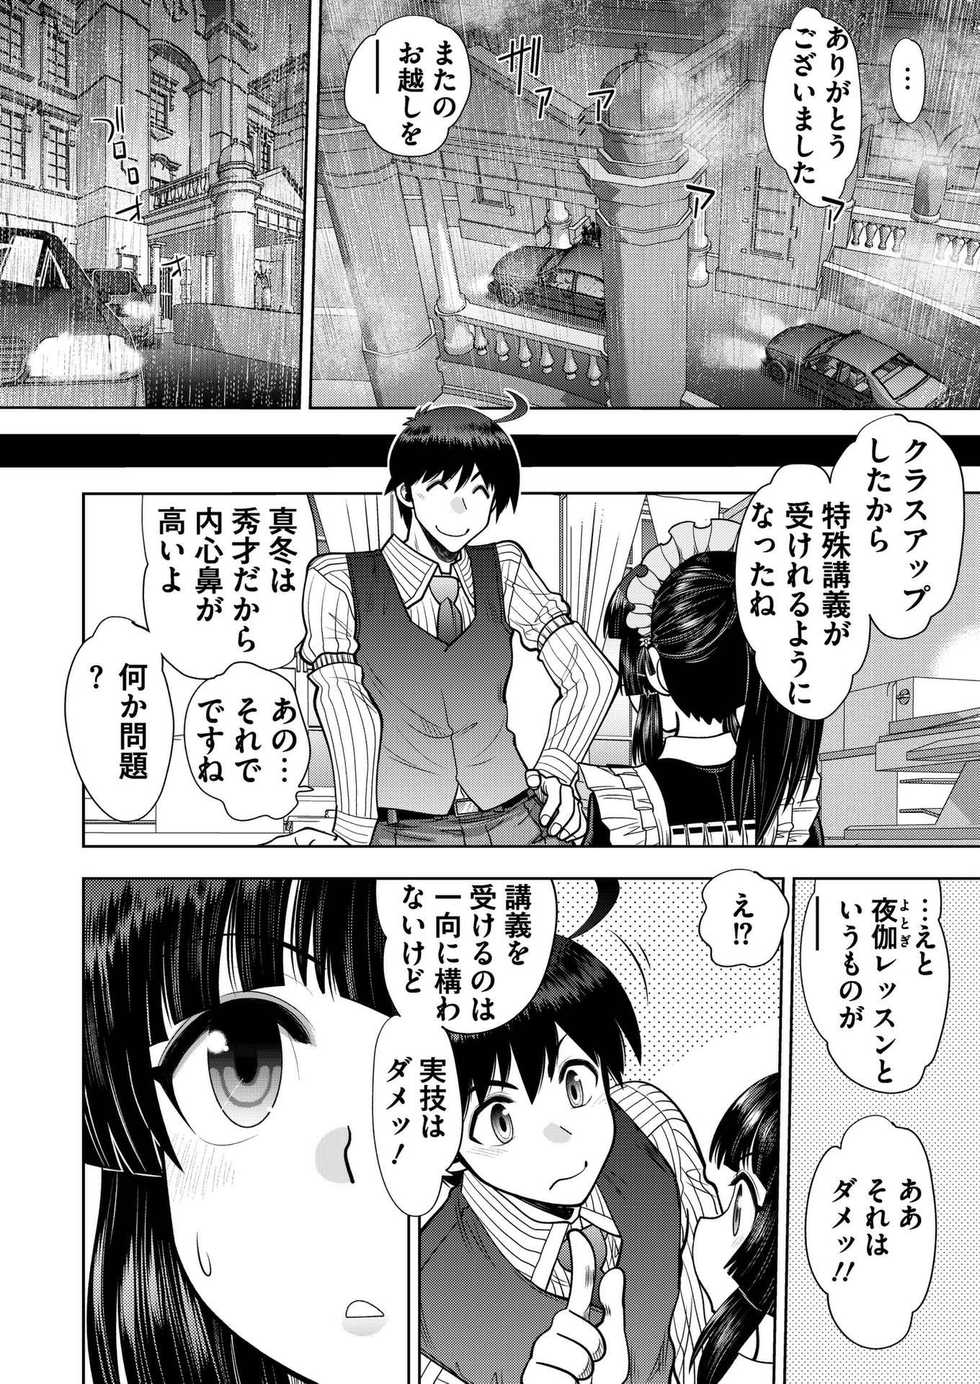 [Yagami Dai] Custom Order Maid 3D 2 Chapter 03 [Digital] - Page 6